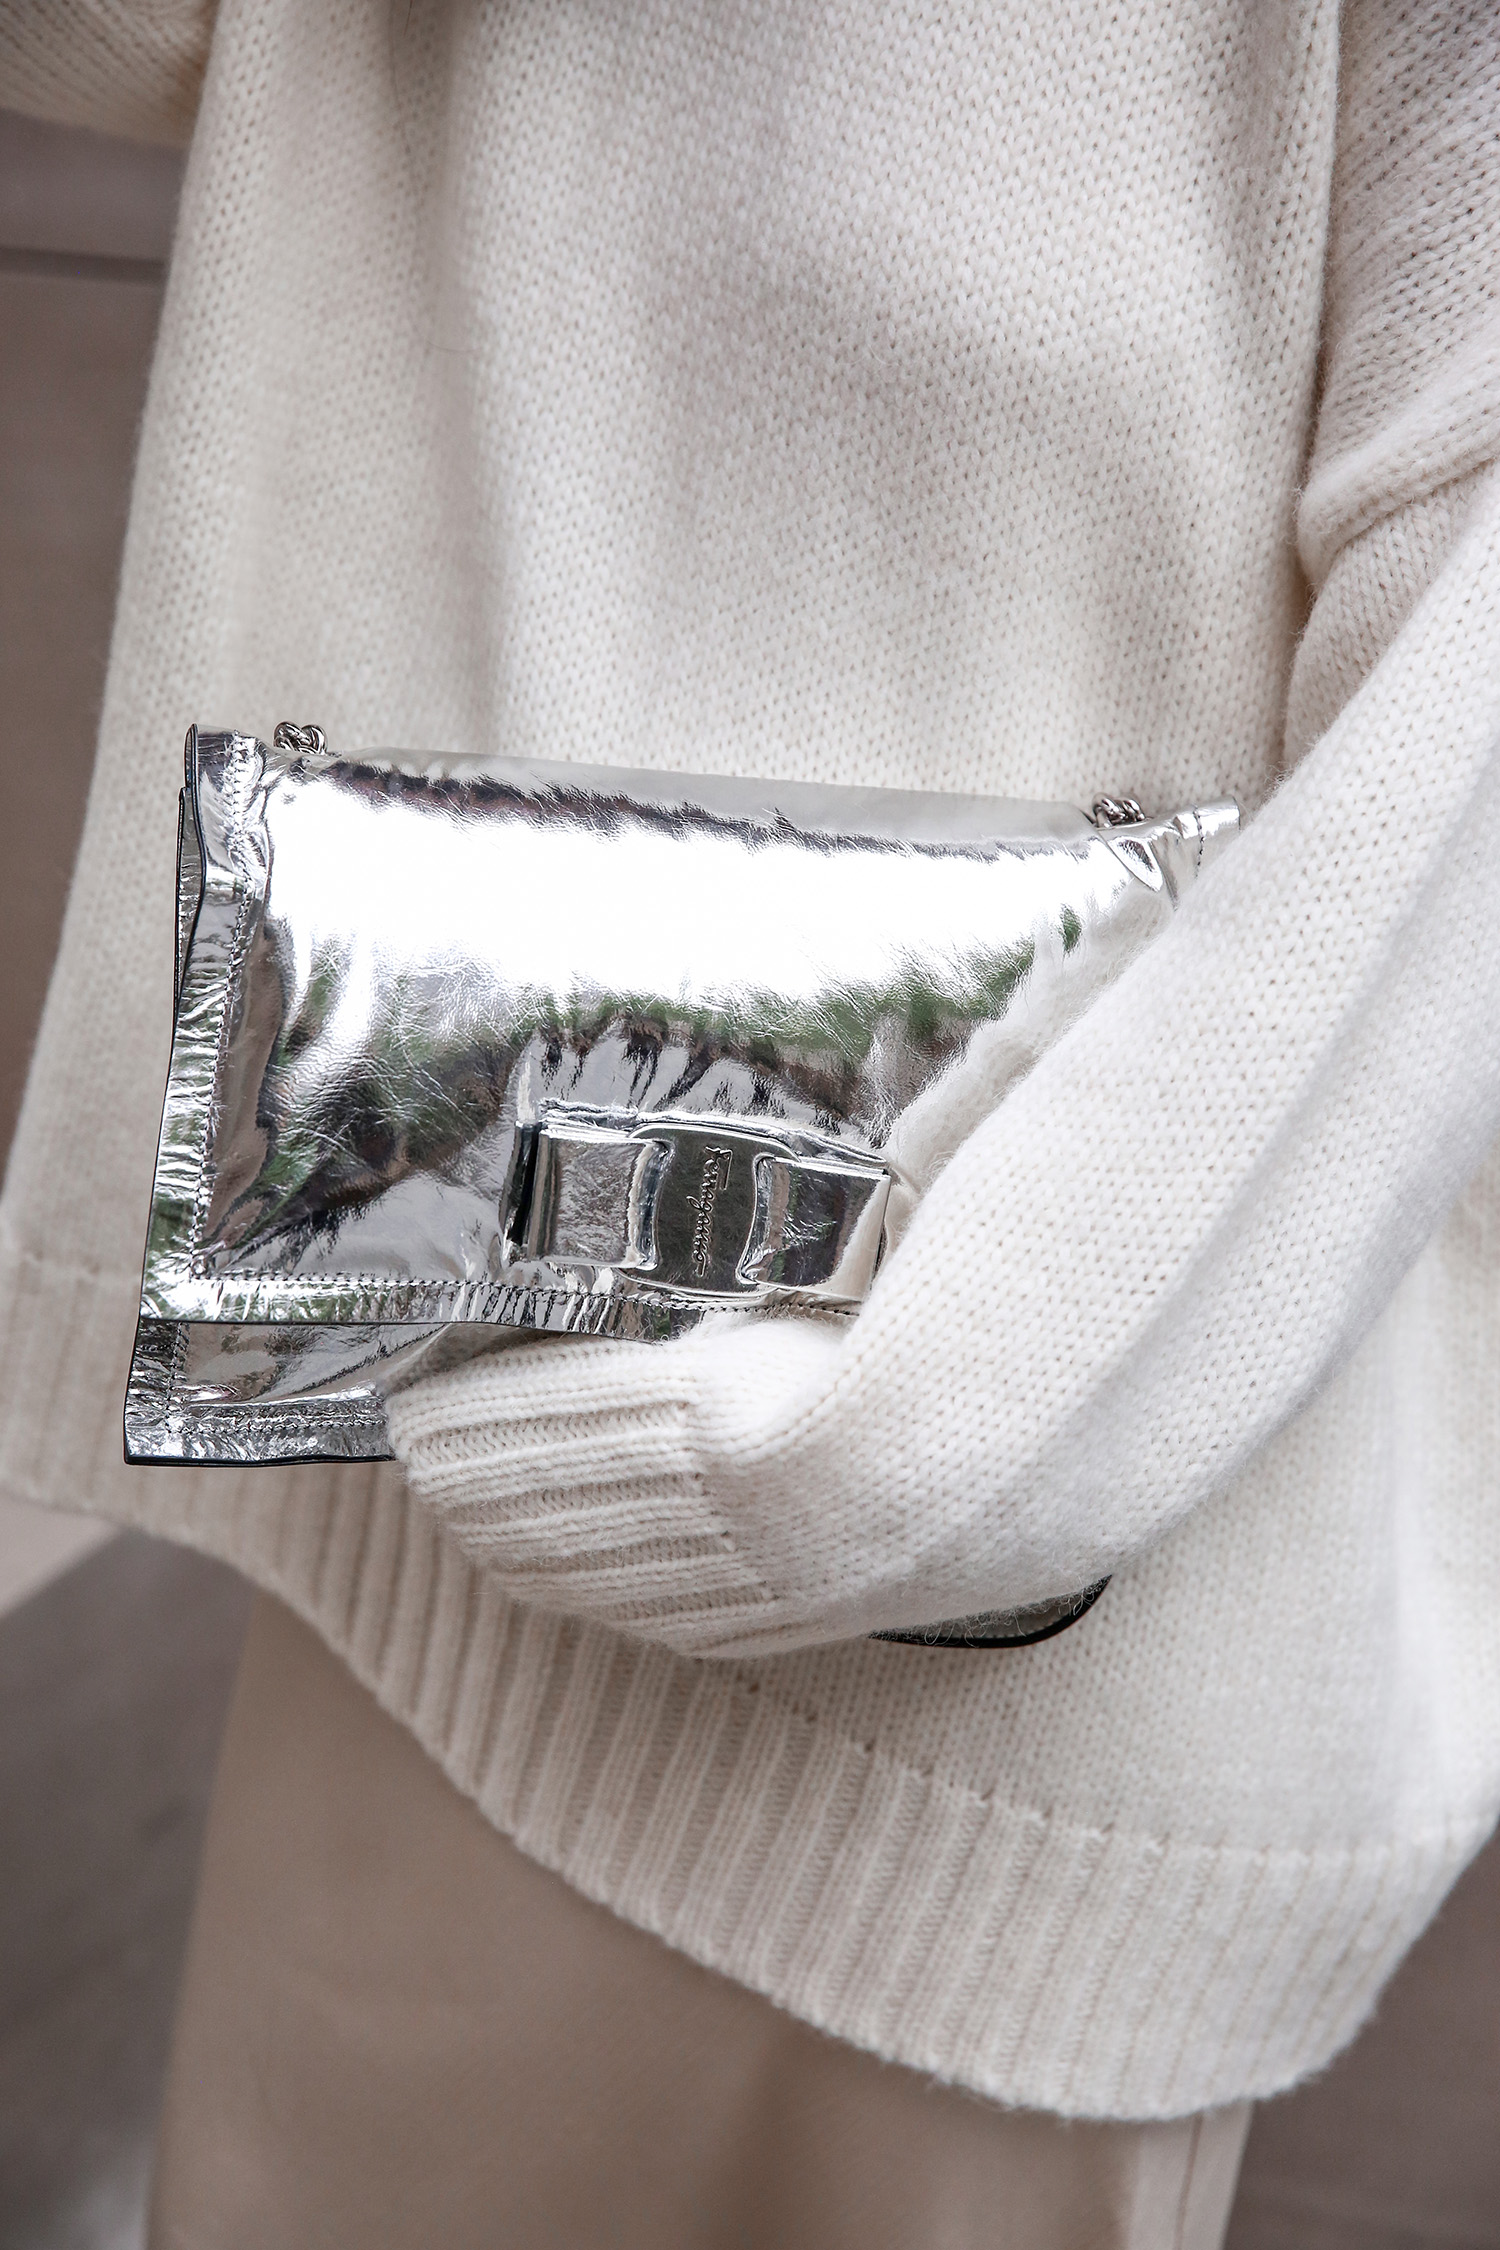 Ferragamo viva bag in silver with Jenni Kayne alpaca knit